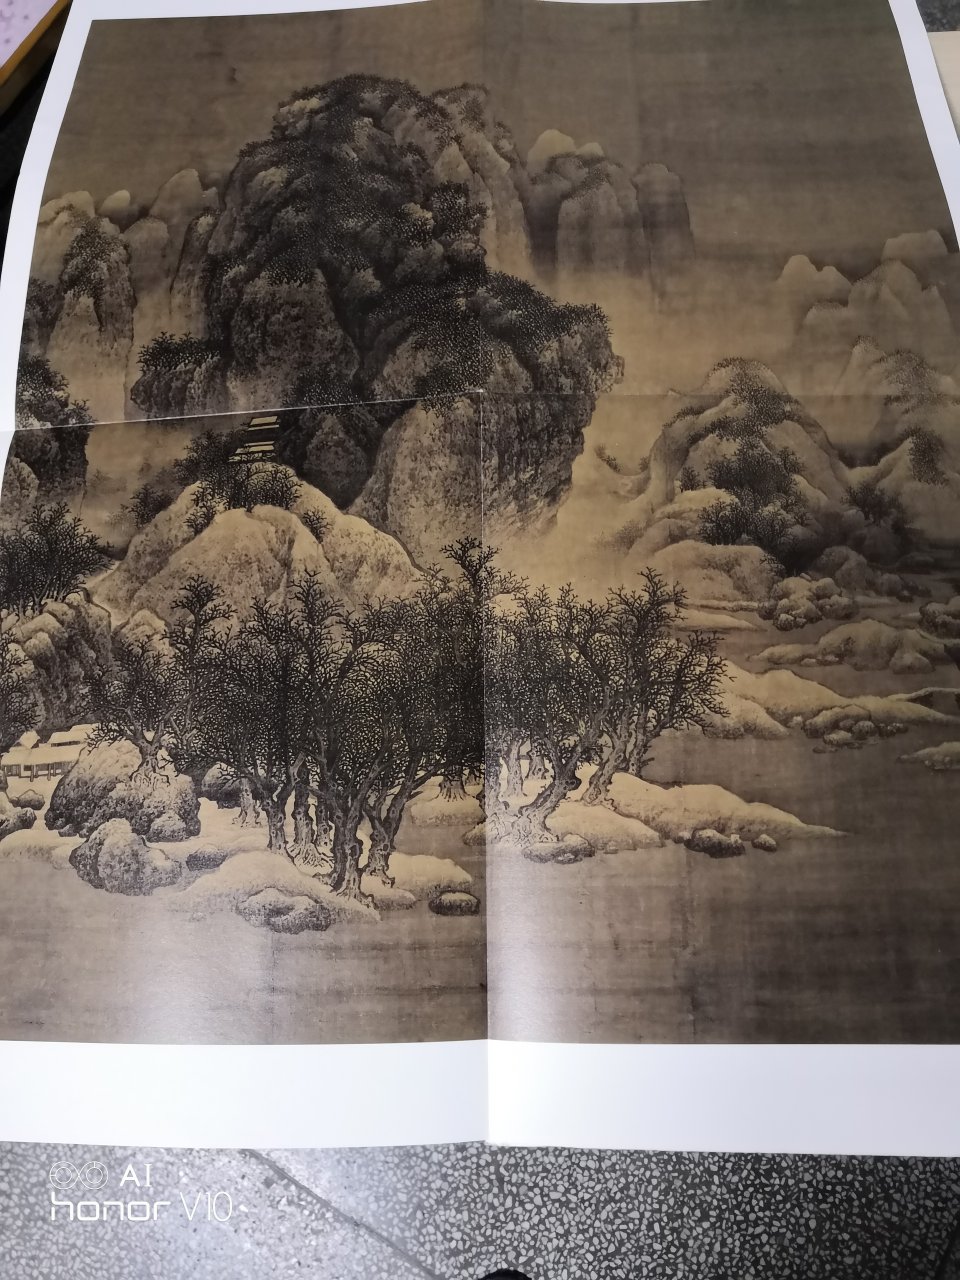 上海書畫出版社這套書 裝幀設計上檔次 印刷精美 紙質優良 版本權威 令人愛不釋手